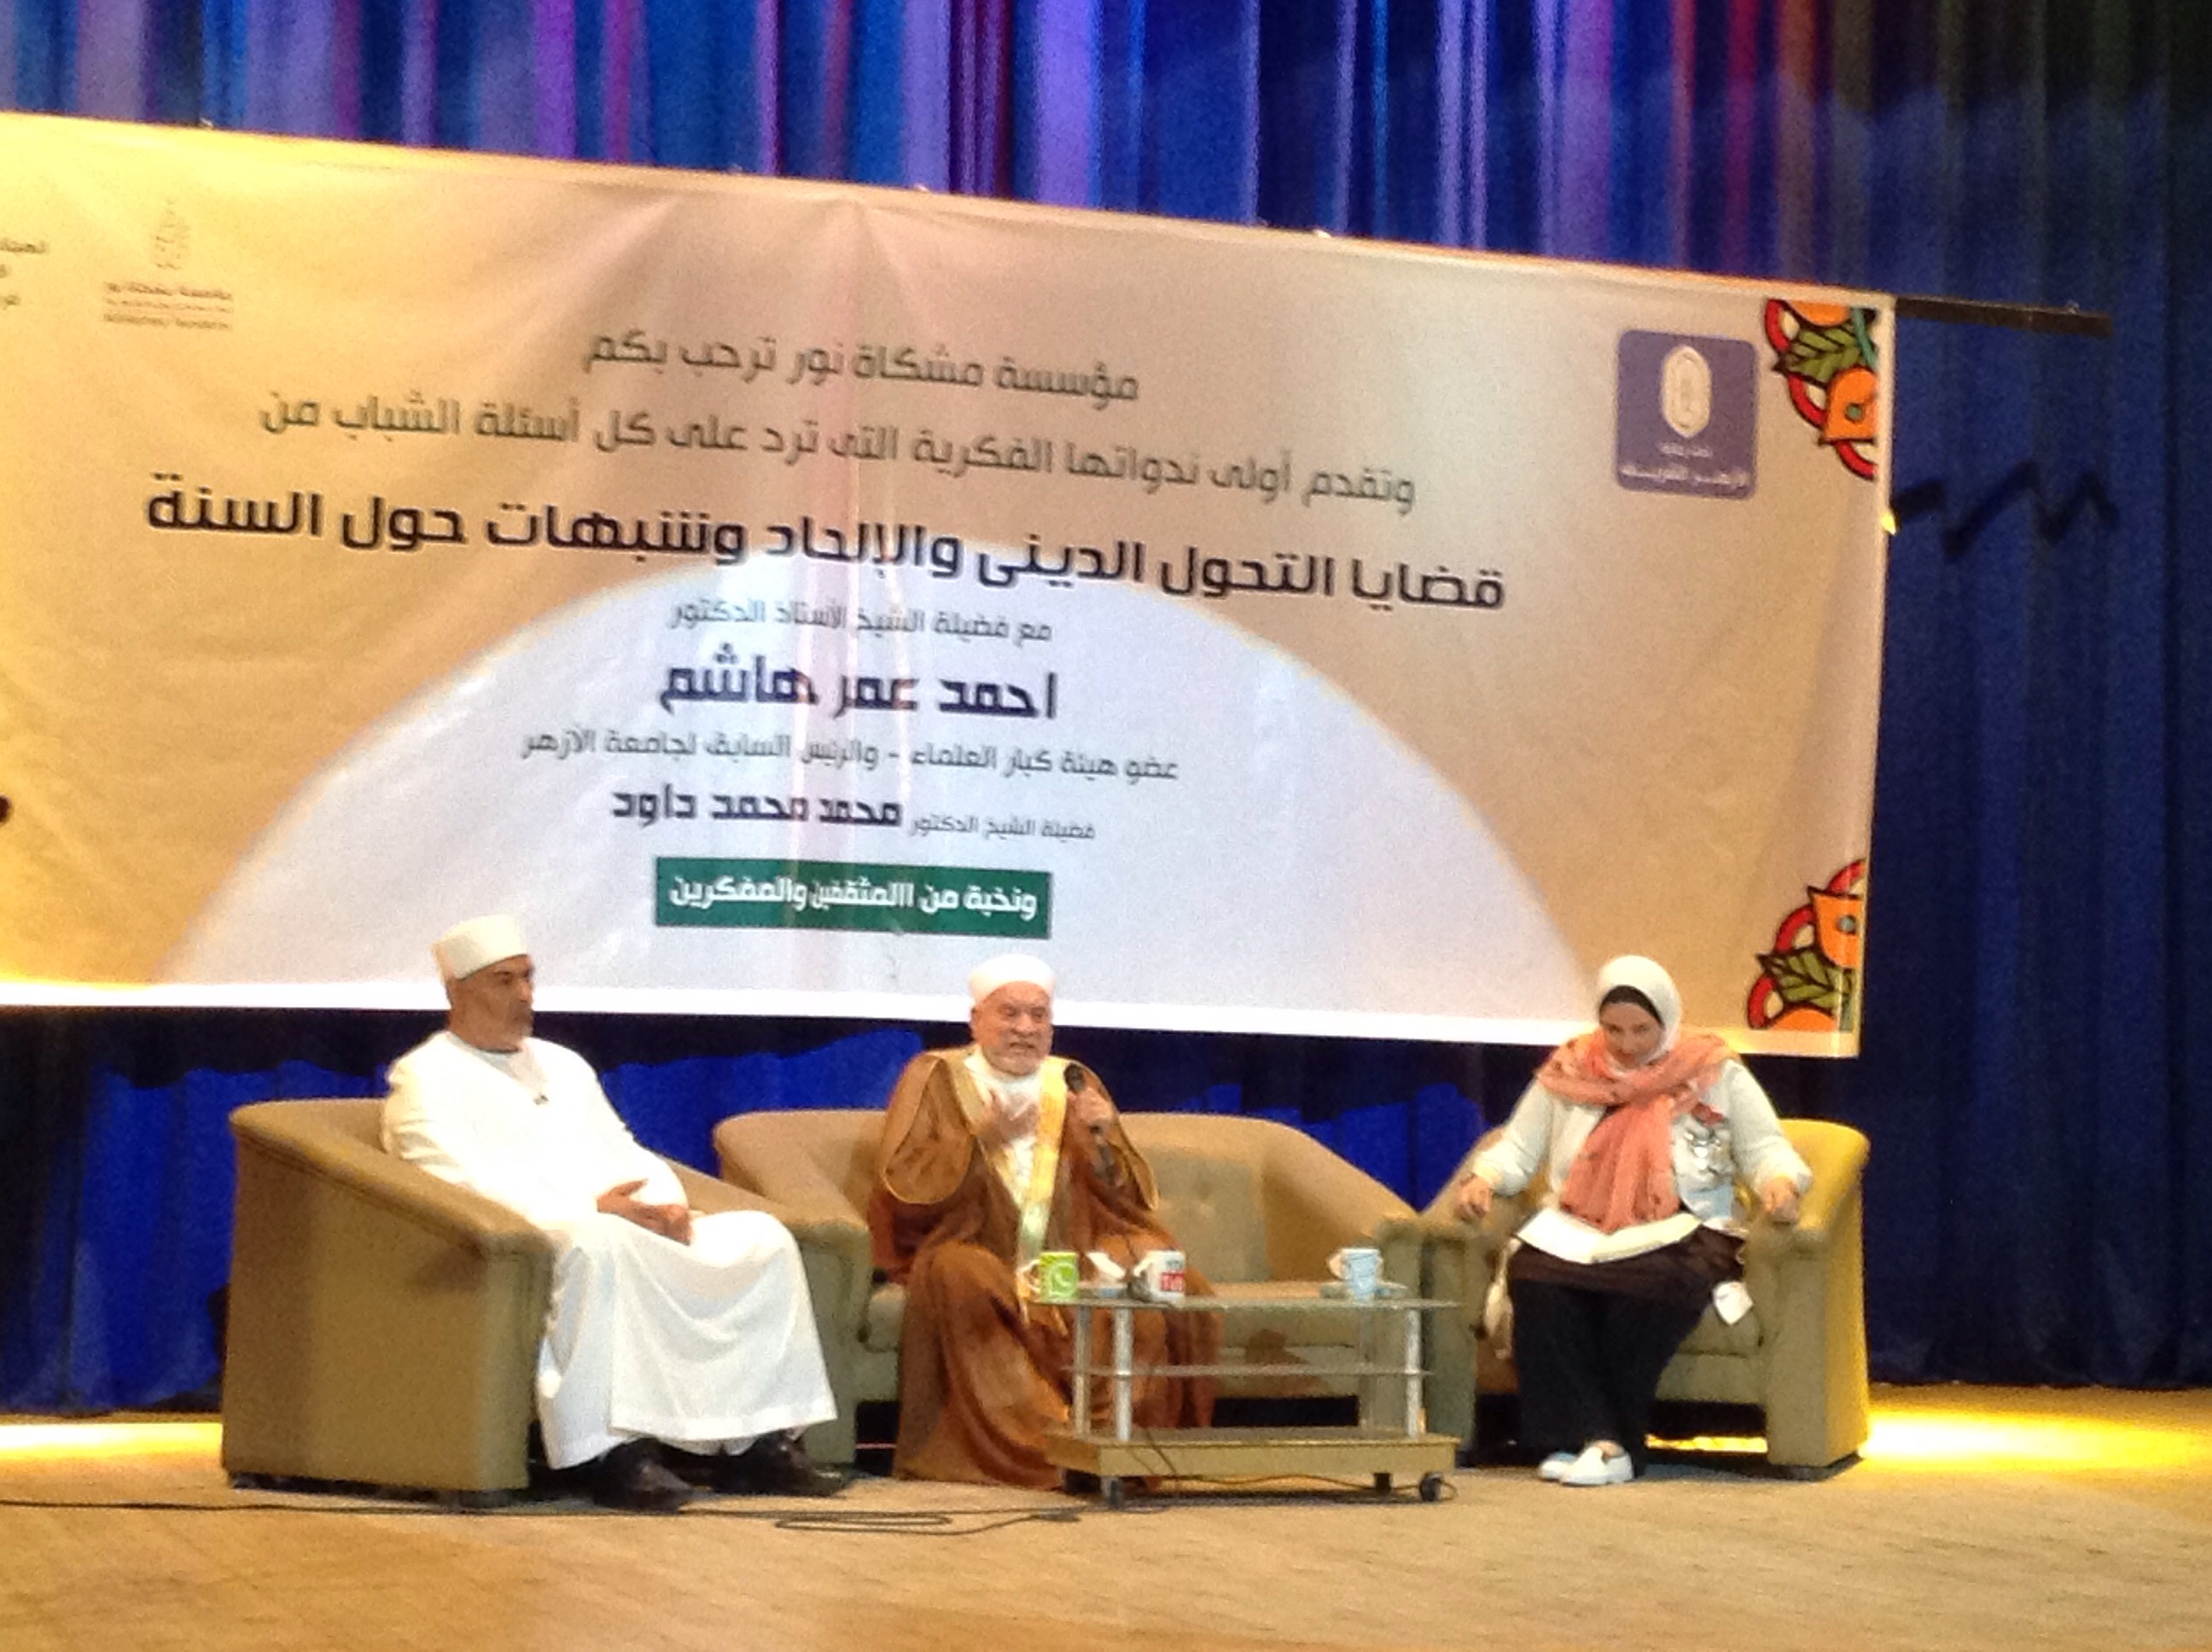 لقاء دينى مع الدكتور أحمد عمر هاشم بثقافة بورسعيد (3)